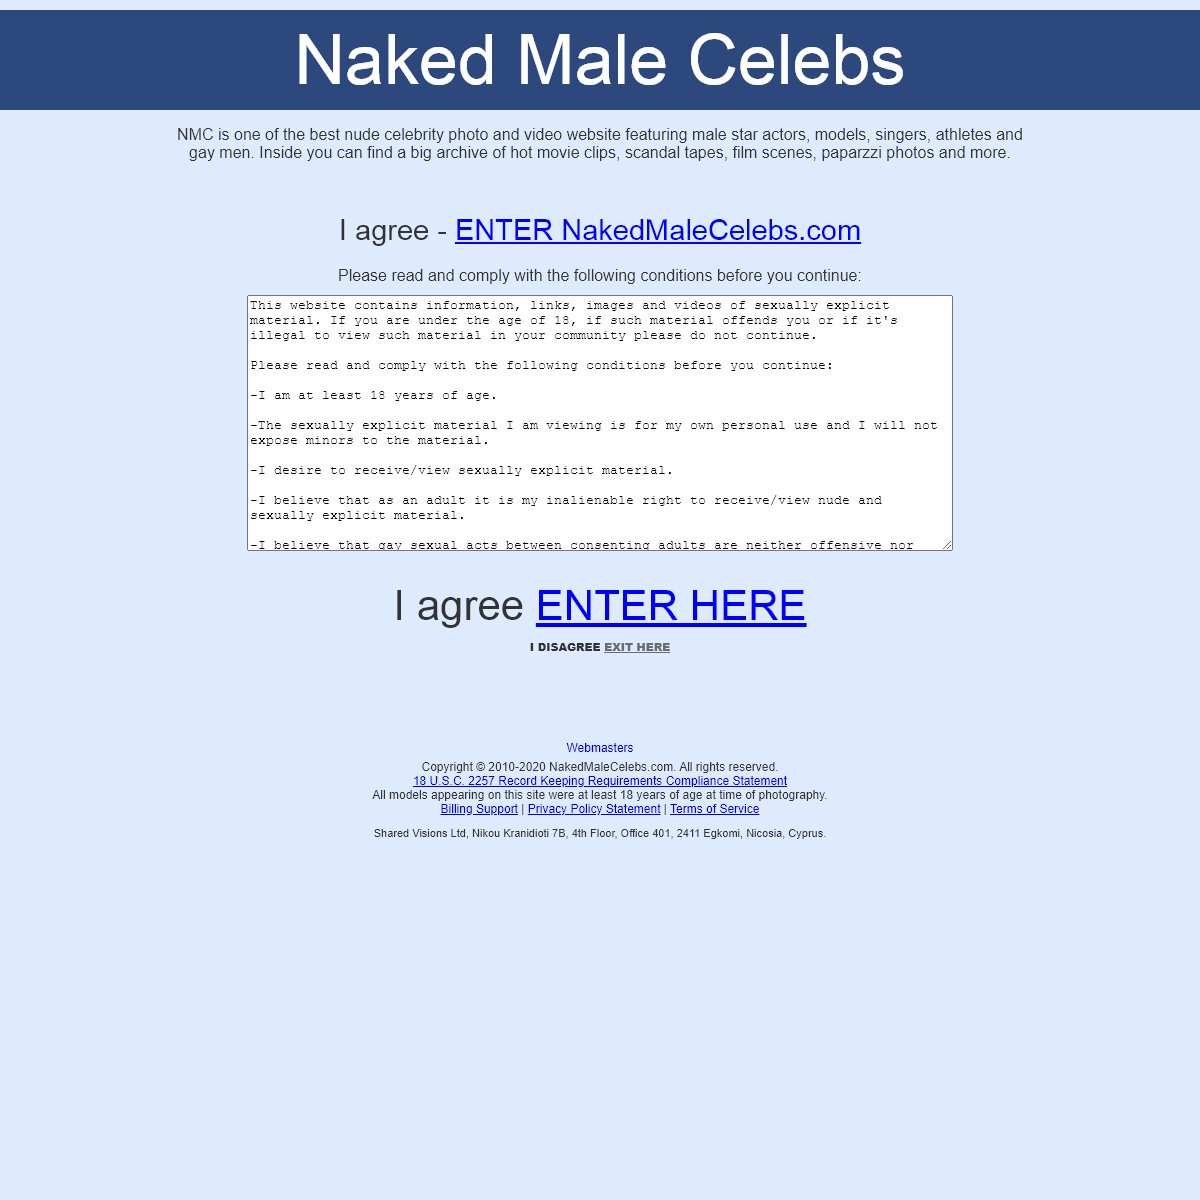 A complete backup of www.nakedmalecelebs.com